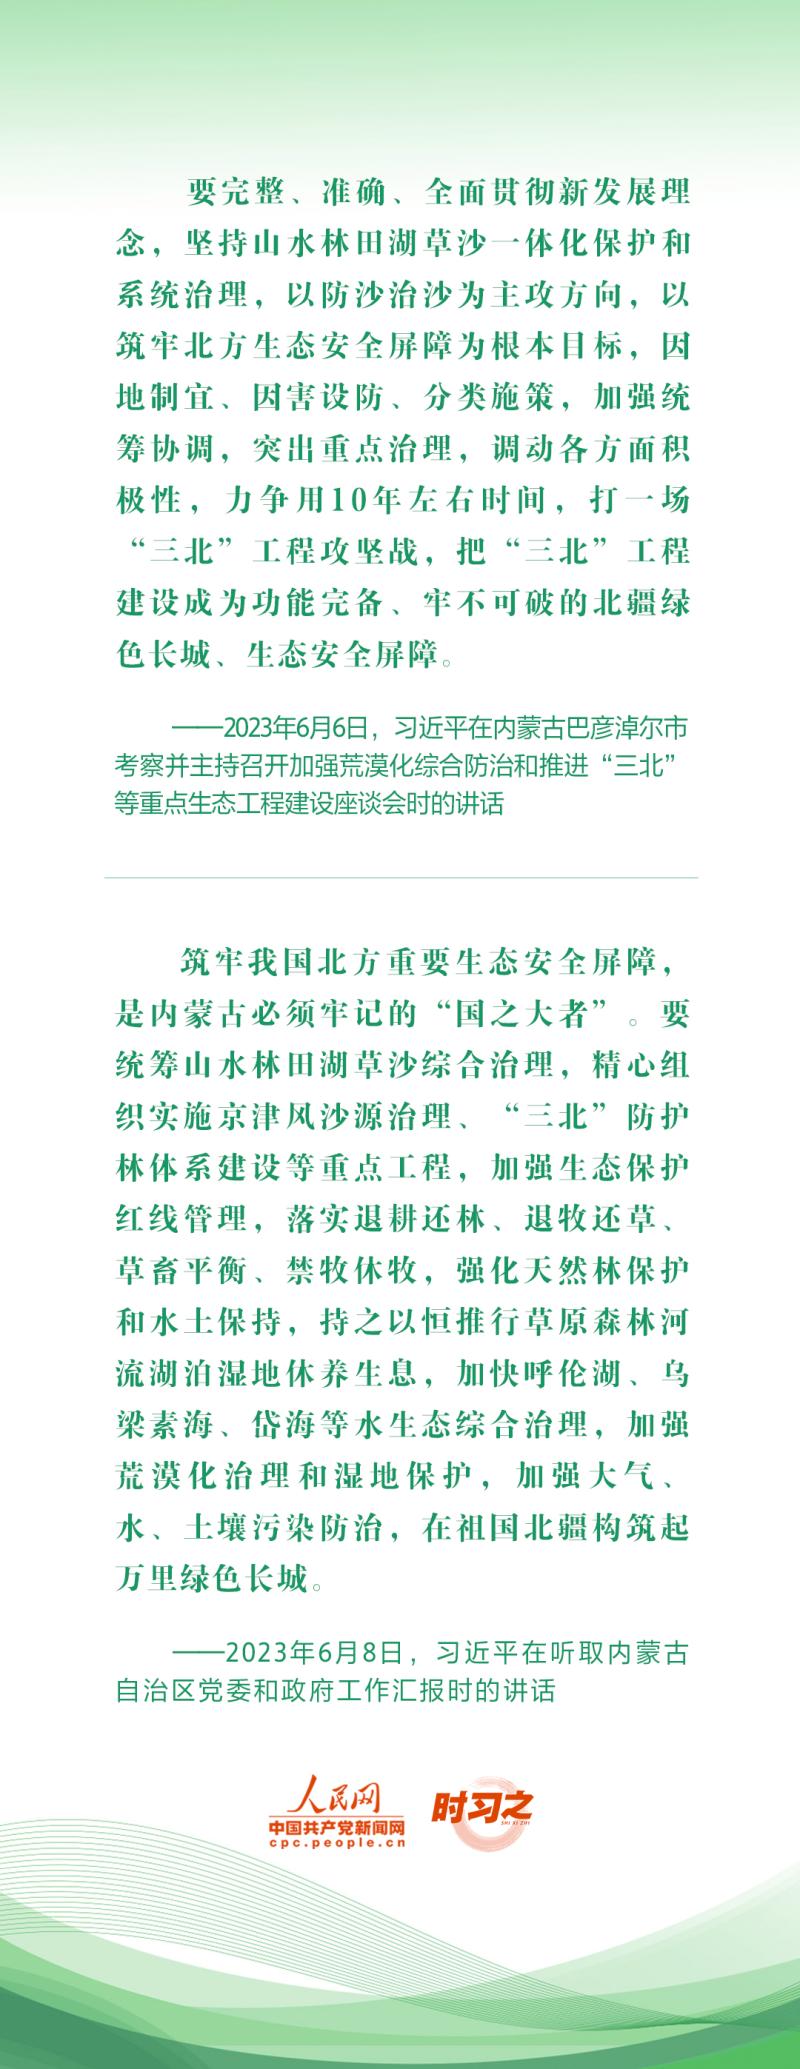 绿水青山映初心总书记心系“绿色中国”总书记心系“绿色中国”--独家稿件|绿水青山映初心|